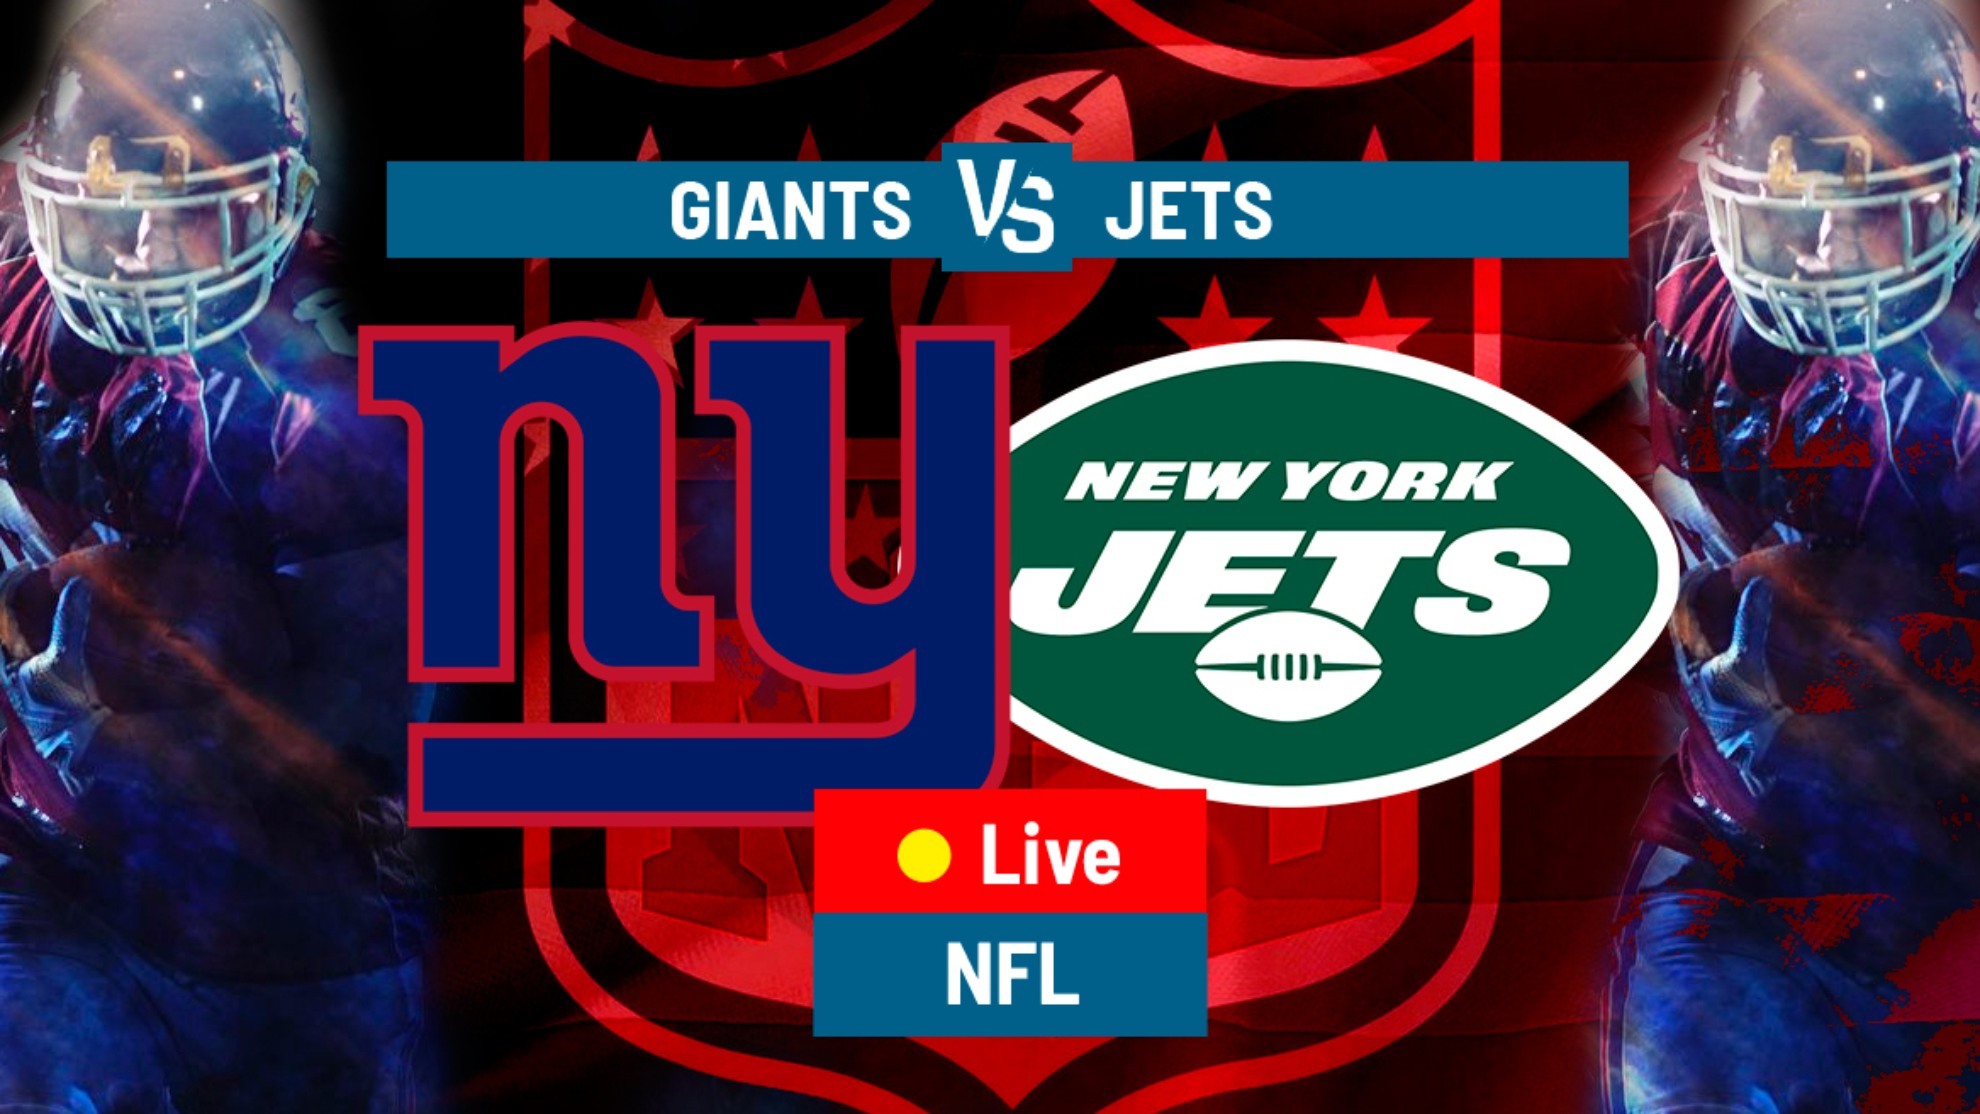 New York Giants vs New York Jets.